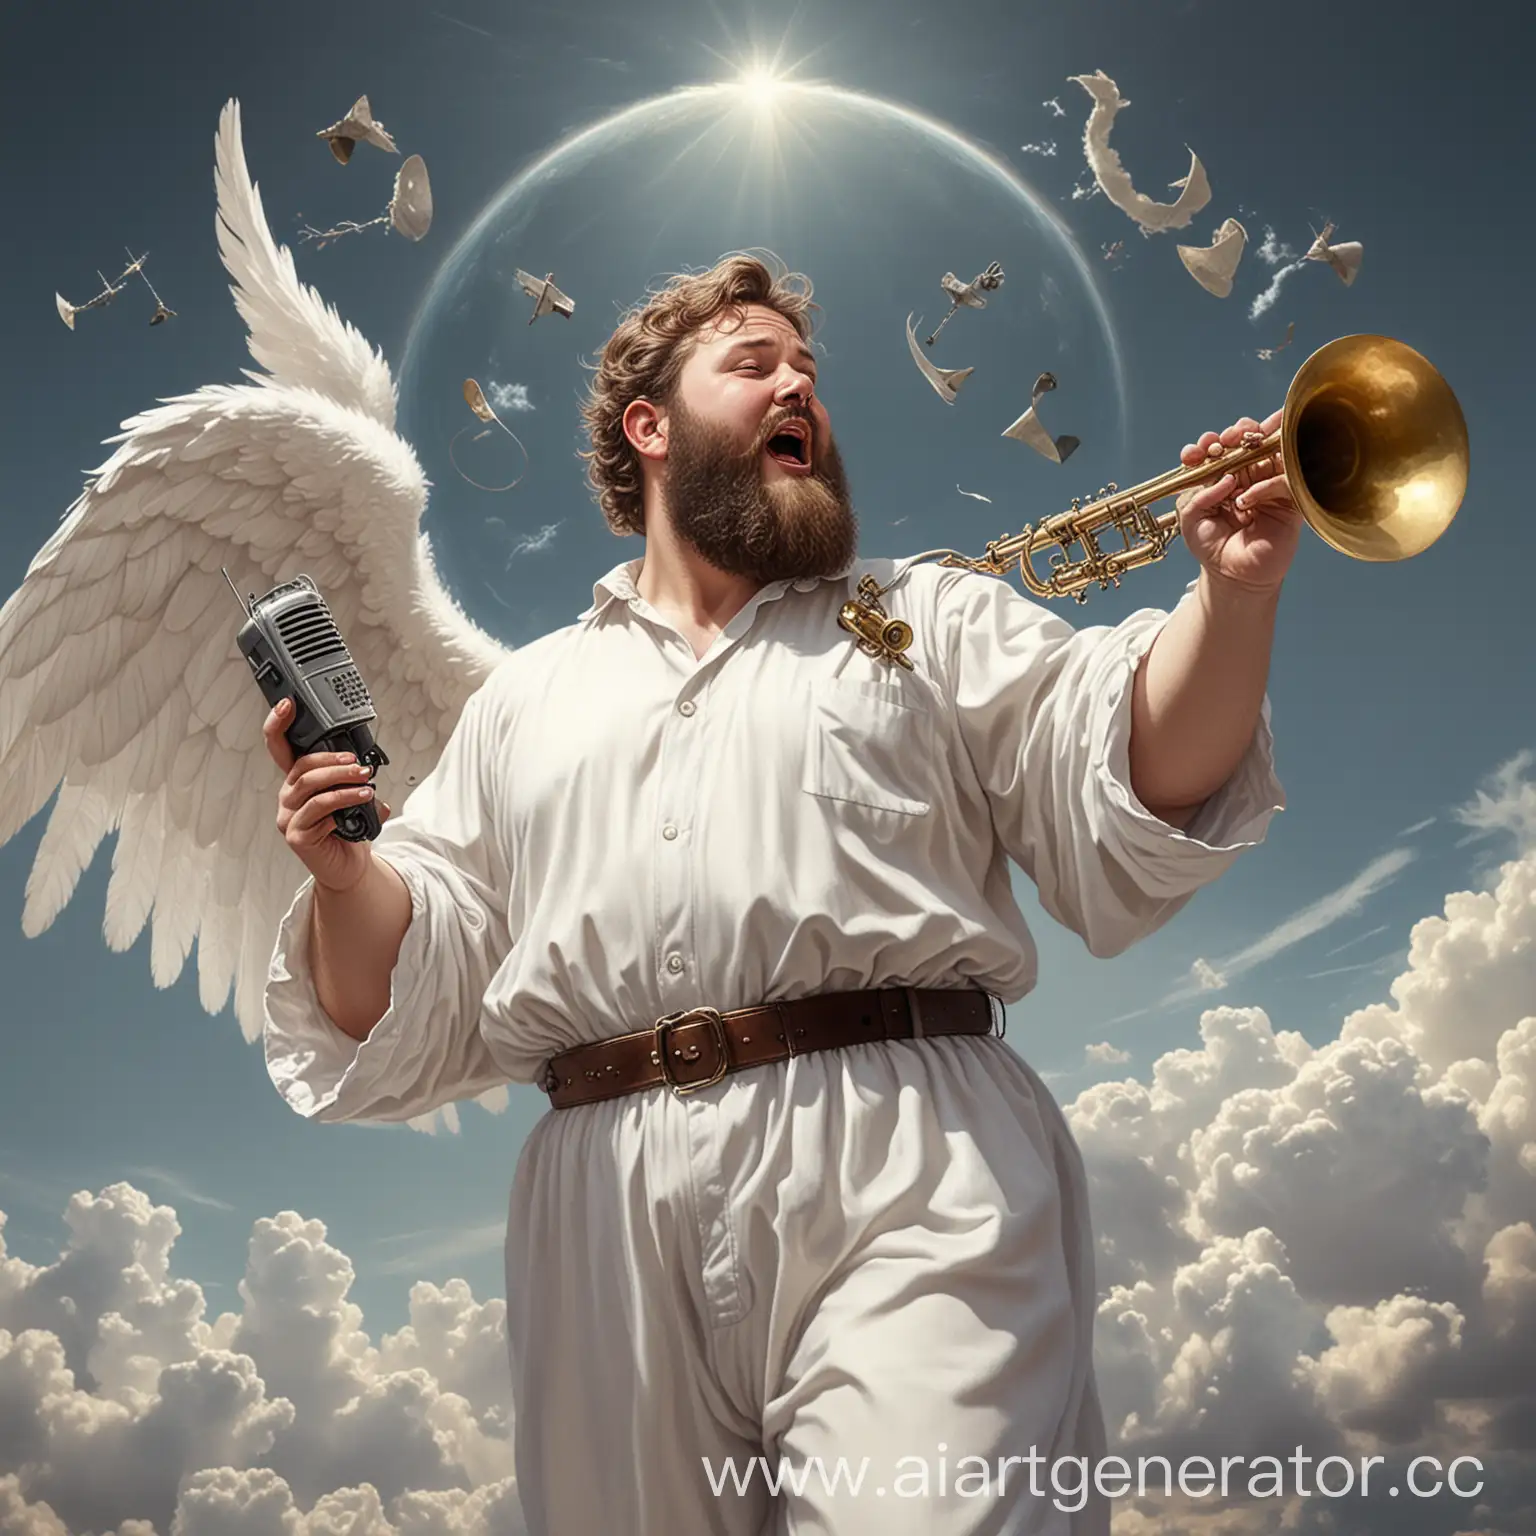 Толстый бородатый ангел в белой одежде дует в трубу в небесах, держит в руке радиоприемник, а на земле радиопередатчики, фотореализм